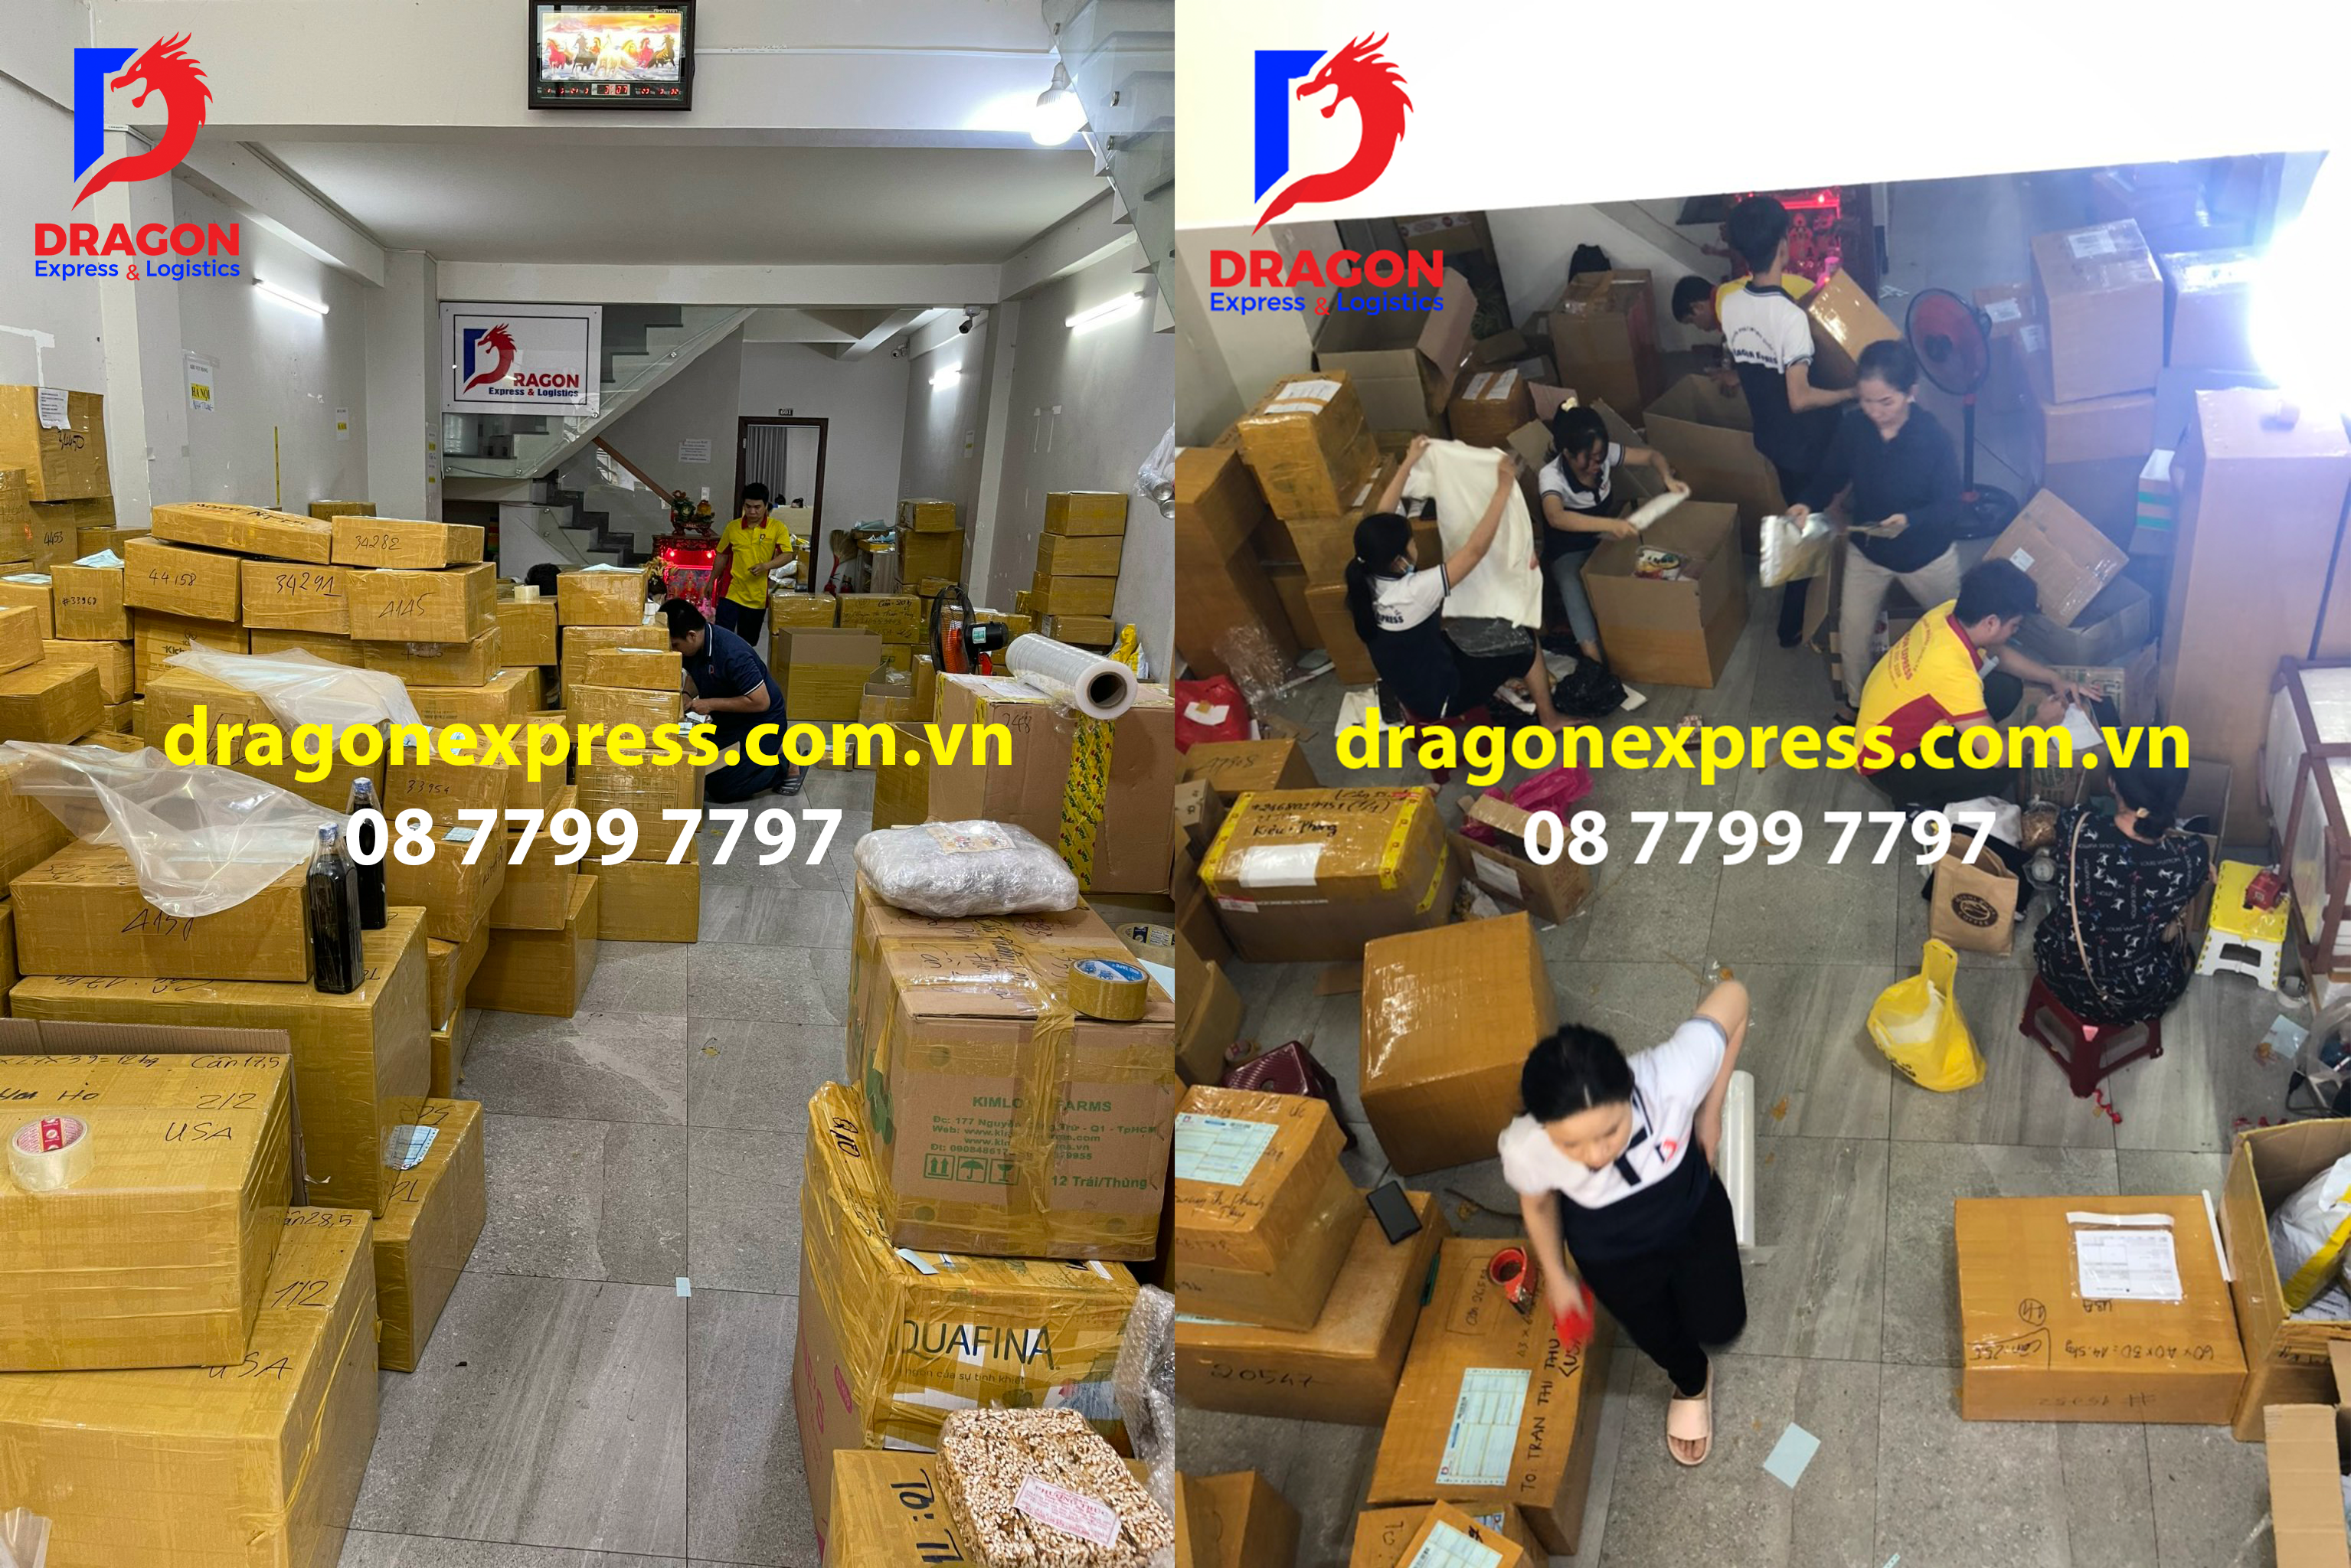 Văn phòng Dragon - Hỗ trợ đóng gói, Gia cố hàng hóa với đội ngũ chuyên nghiệp